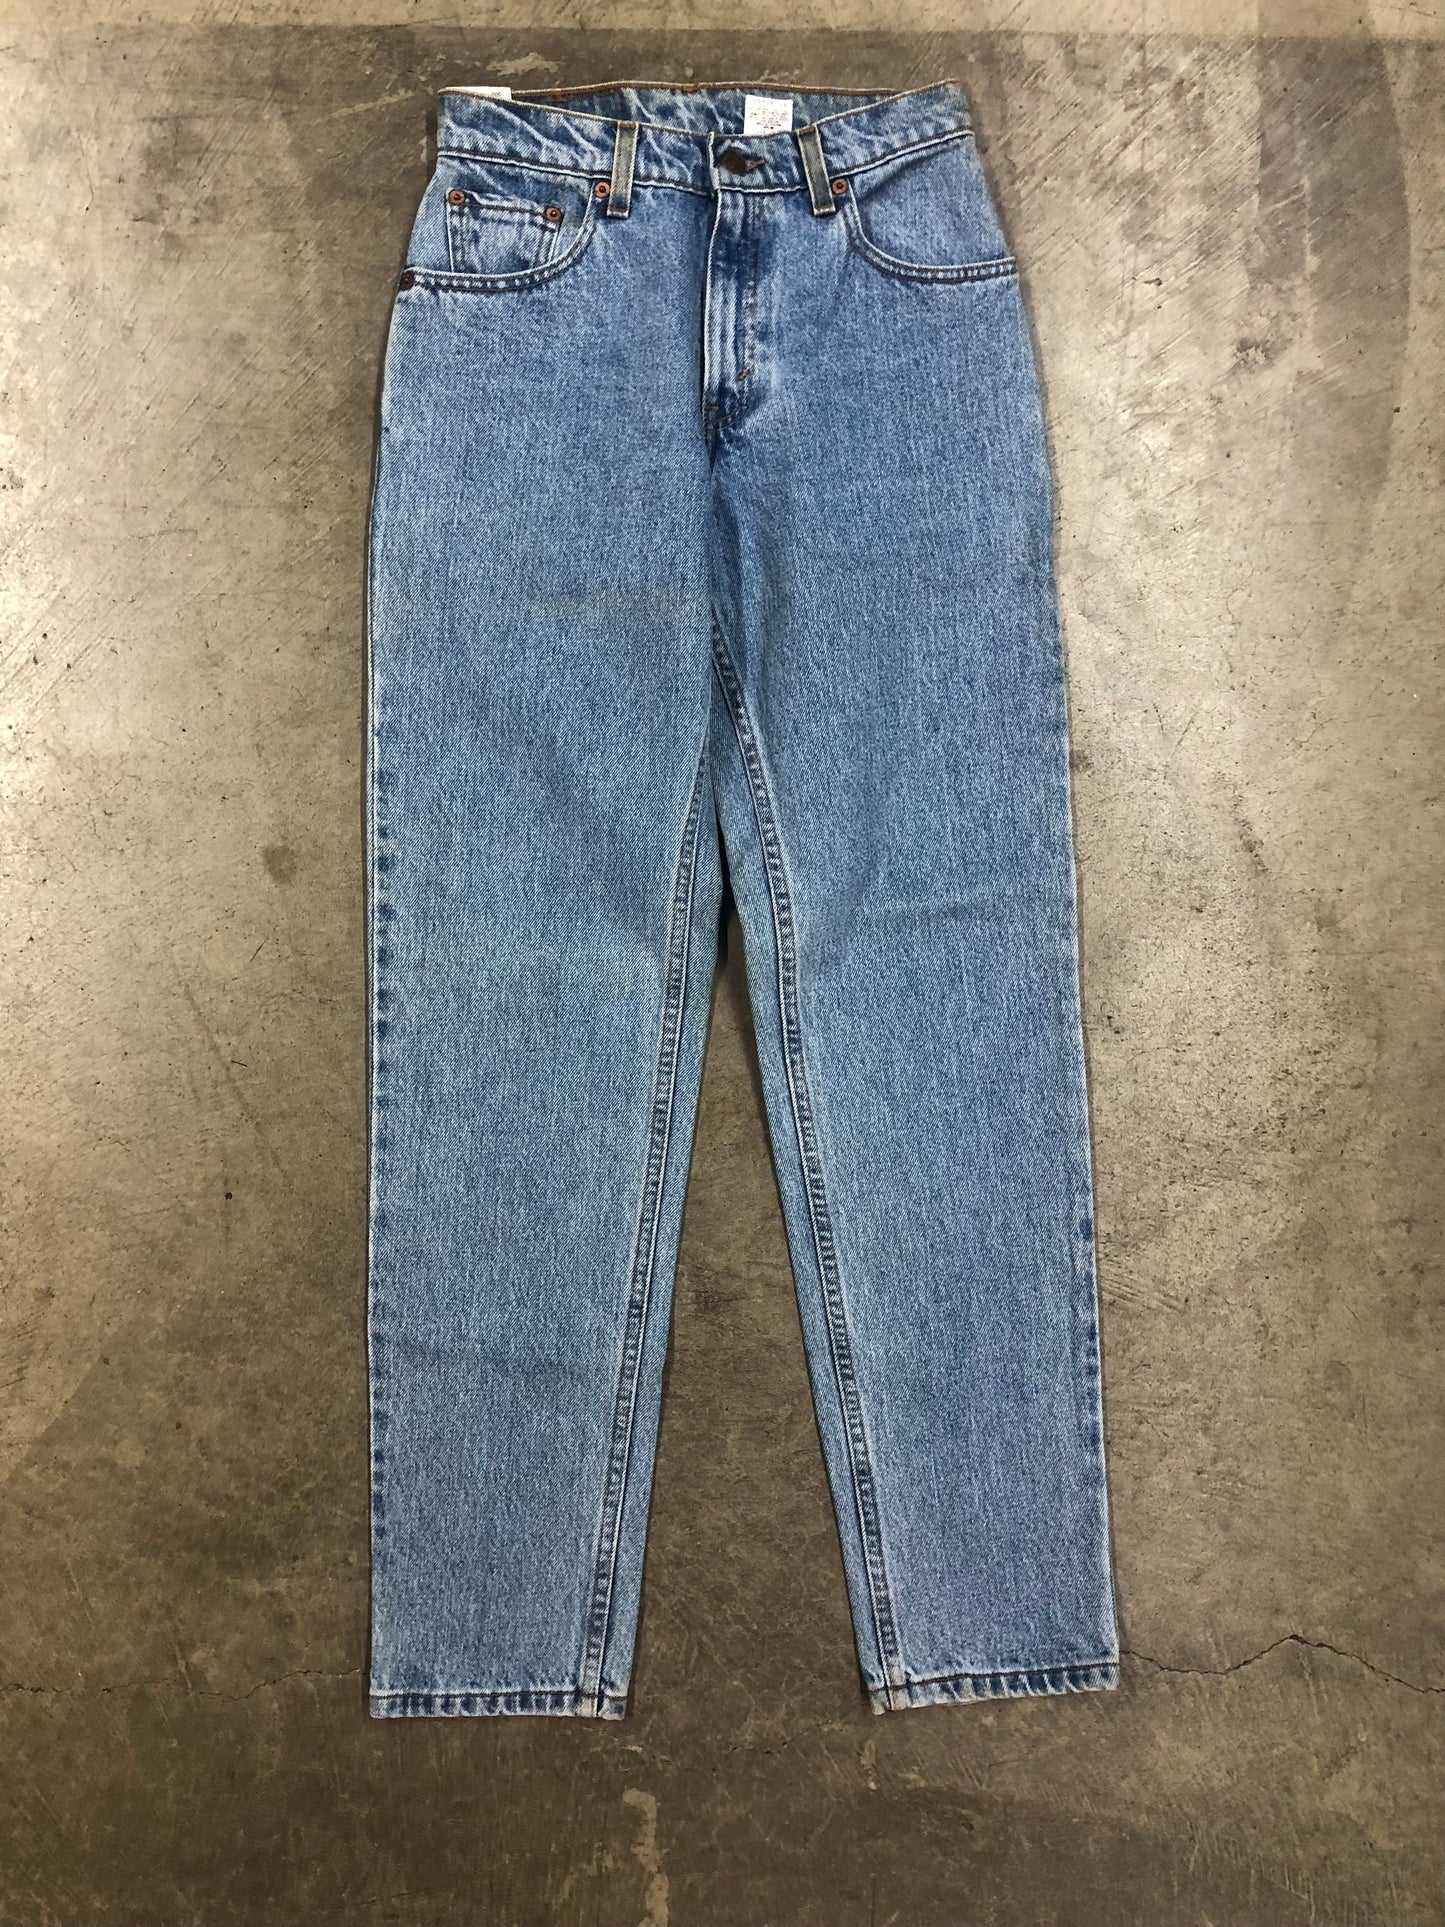 VTG Levi's 550 Relaxed Fit Junior Cut  Blue Jeans Sz 24x31